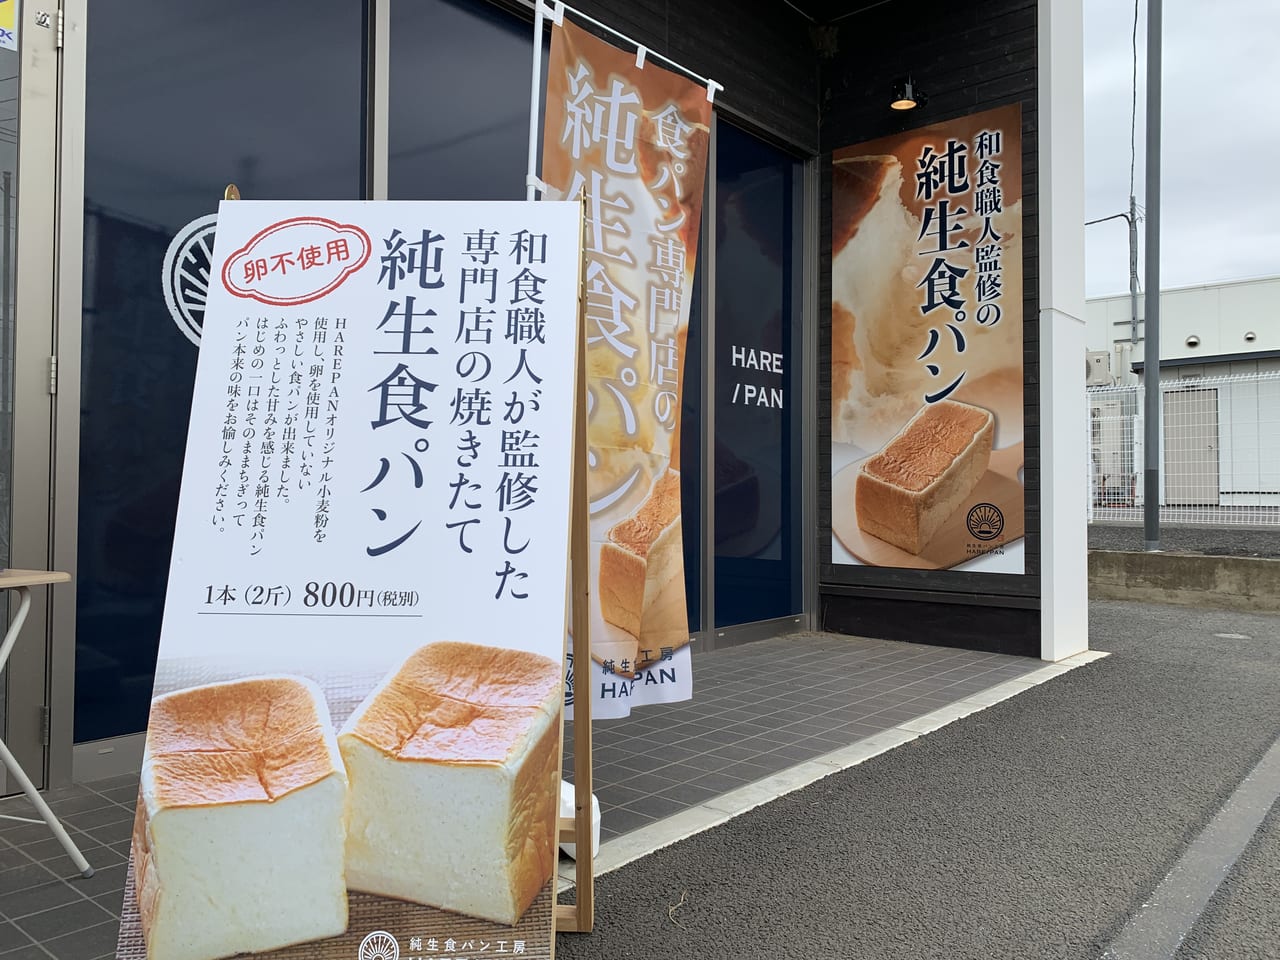 店 藤沢 晴れ パン 『『純生食パン工房 HARE/PAN